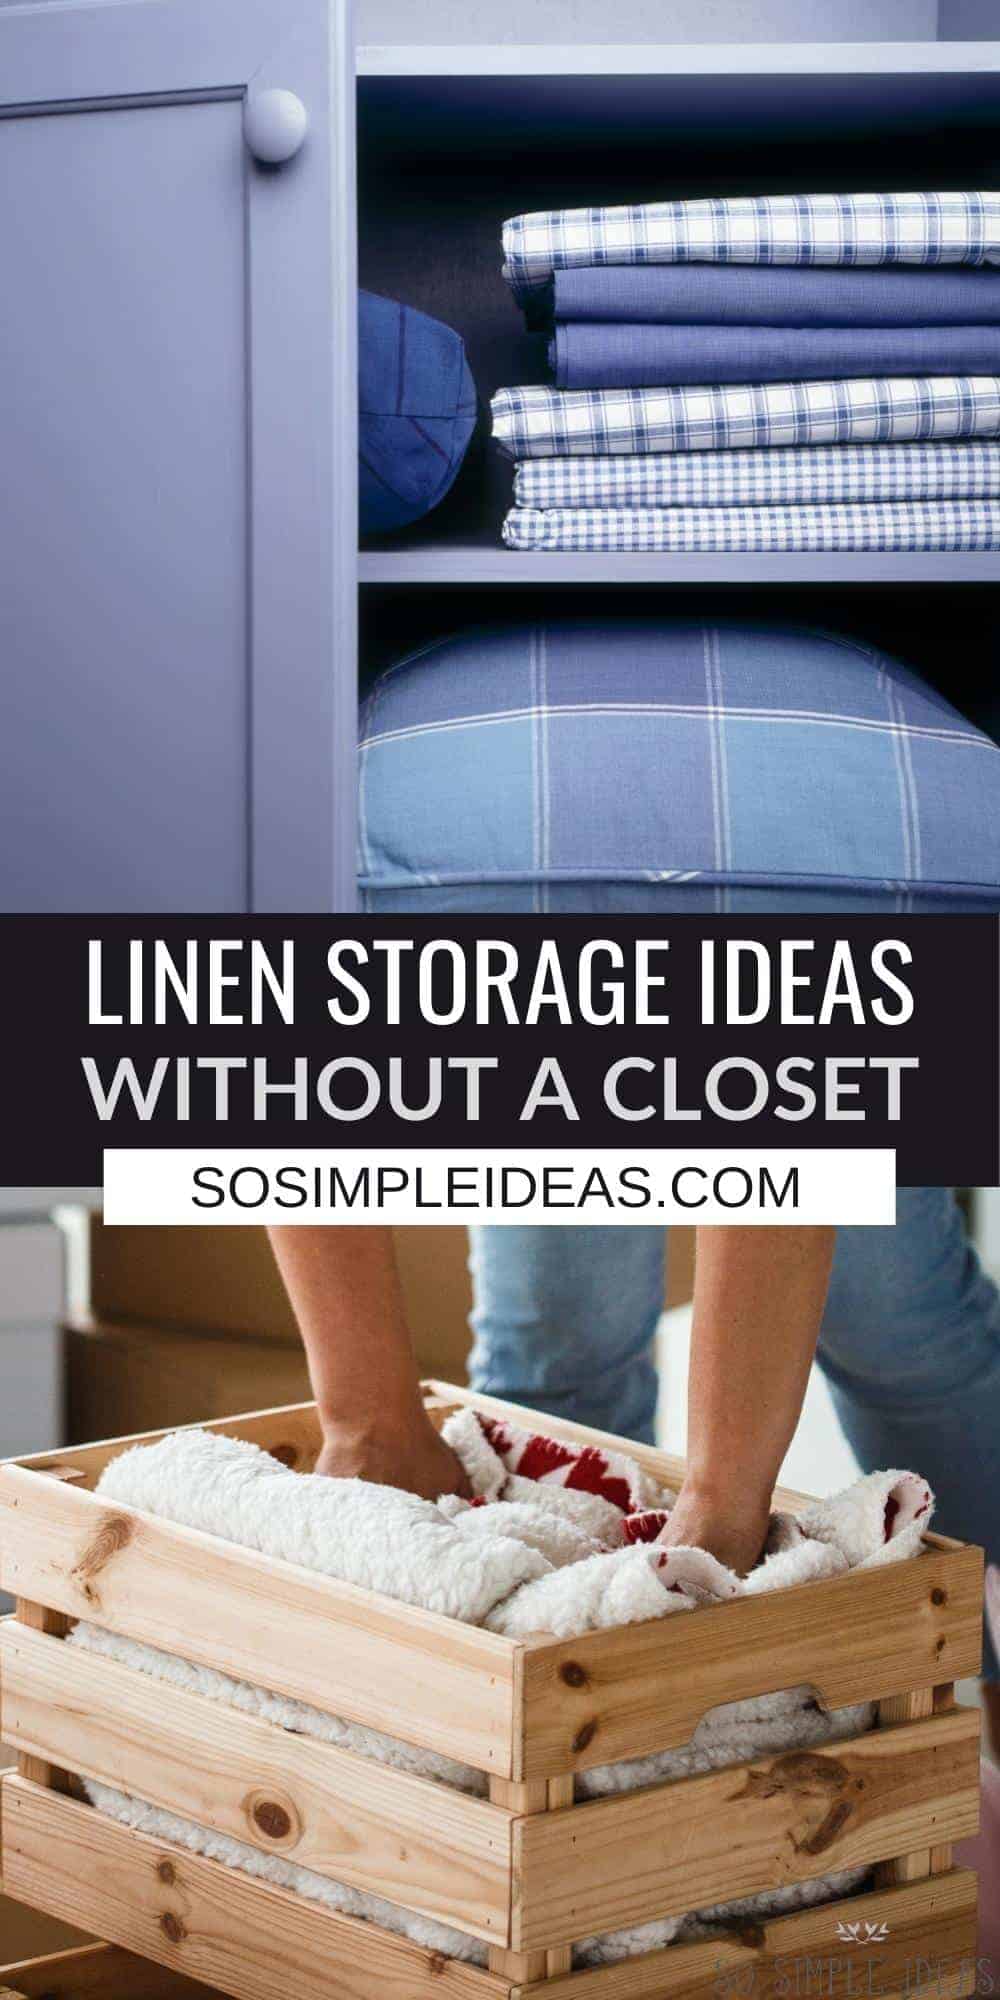 linen storage ideas without closet pinterest image.